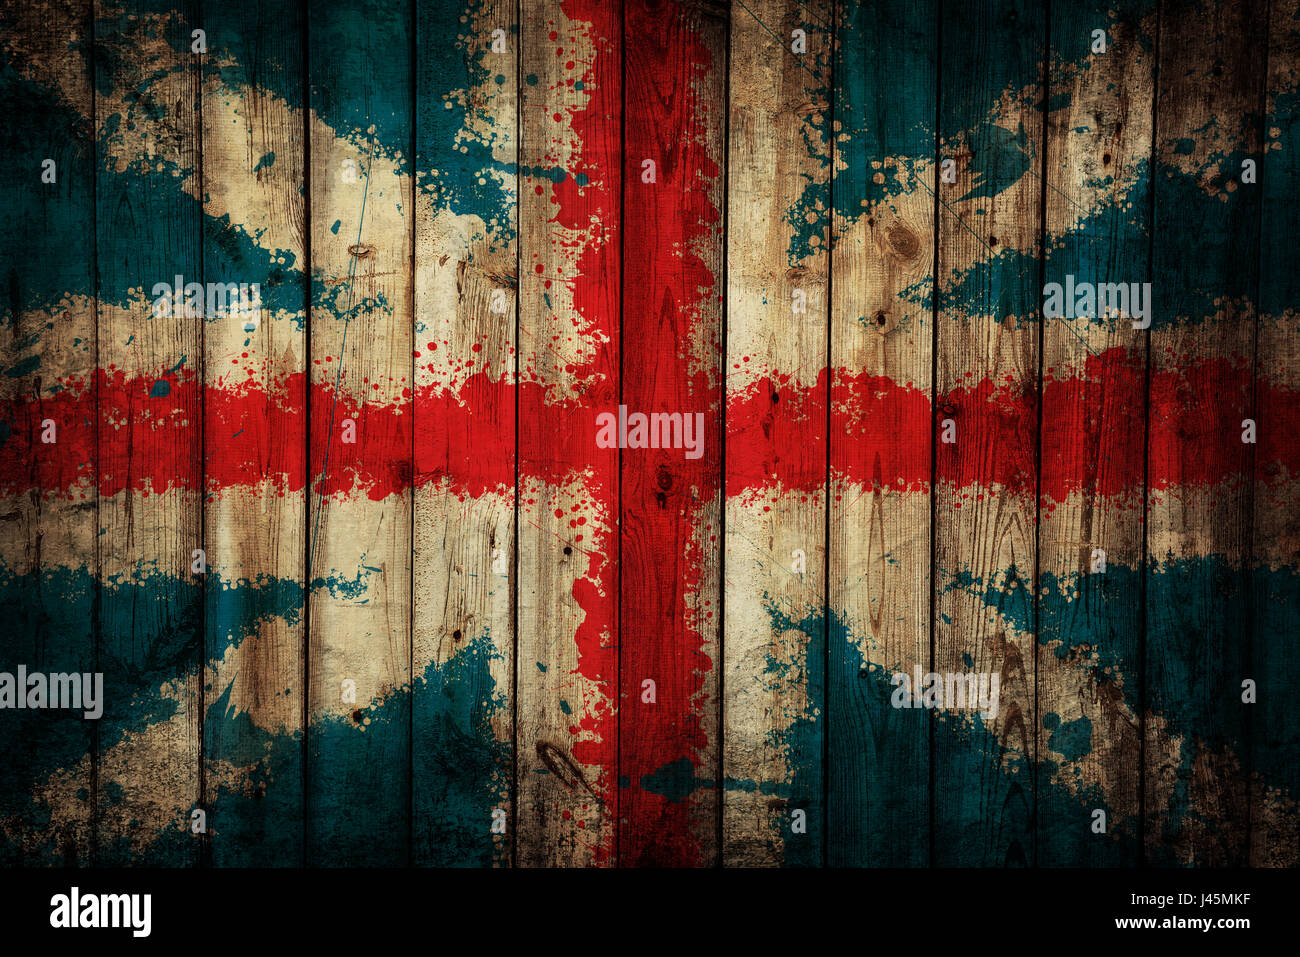 Grunge England Flagge gemalt auf Holz Hintergrund Stockfoto